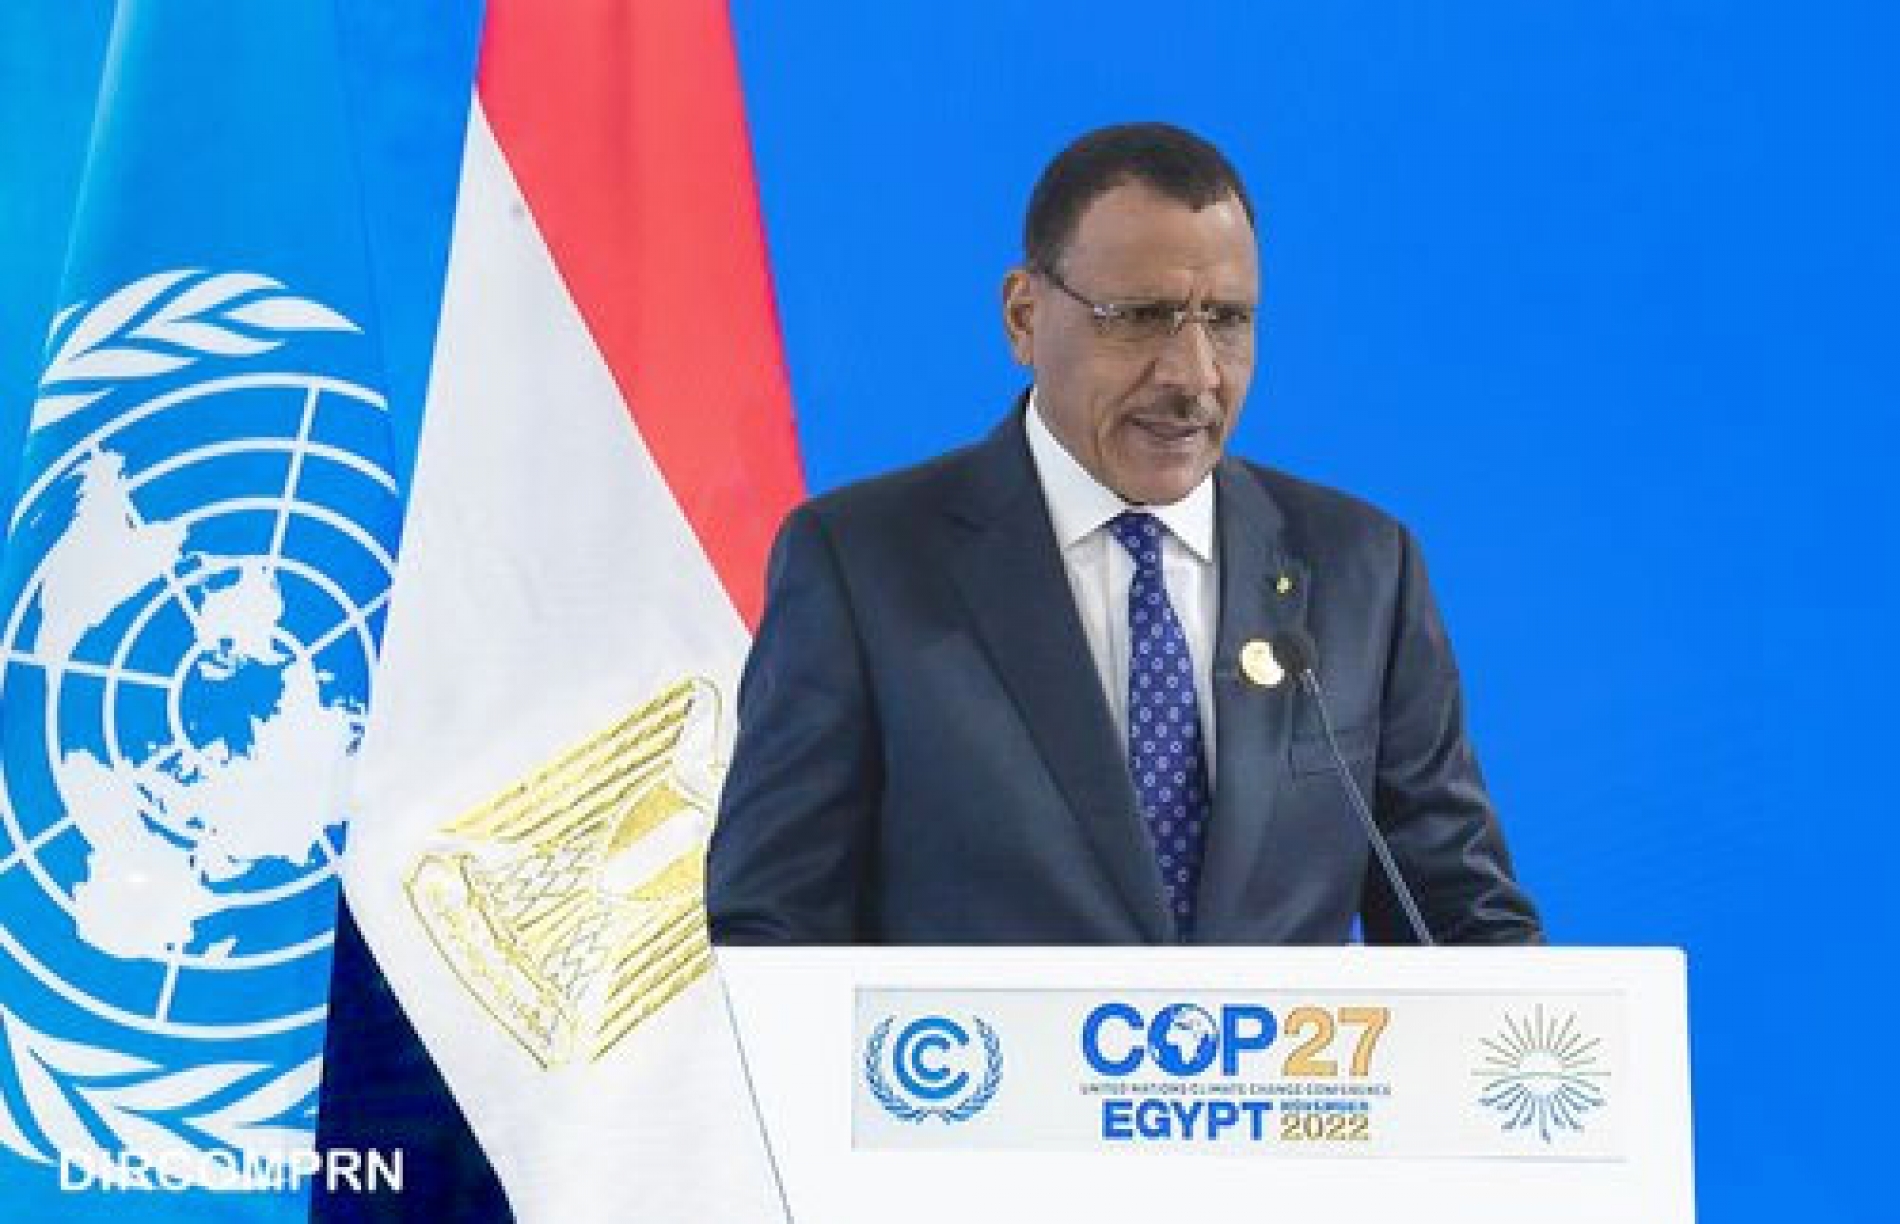 Le Chef de l’Etat à la COP 27, à Sharm El Sheikh (Egypte) : SEM. Mohamed Bazoum plaide en faveur de la mise en œuvre des engagements souscrits en matière de financement pour le climat